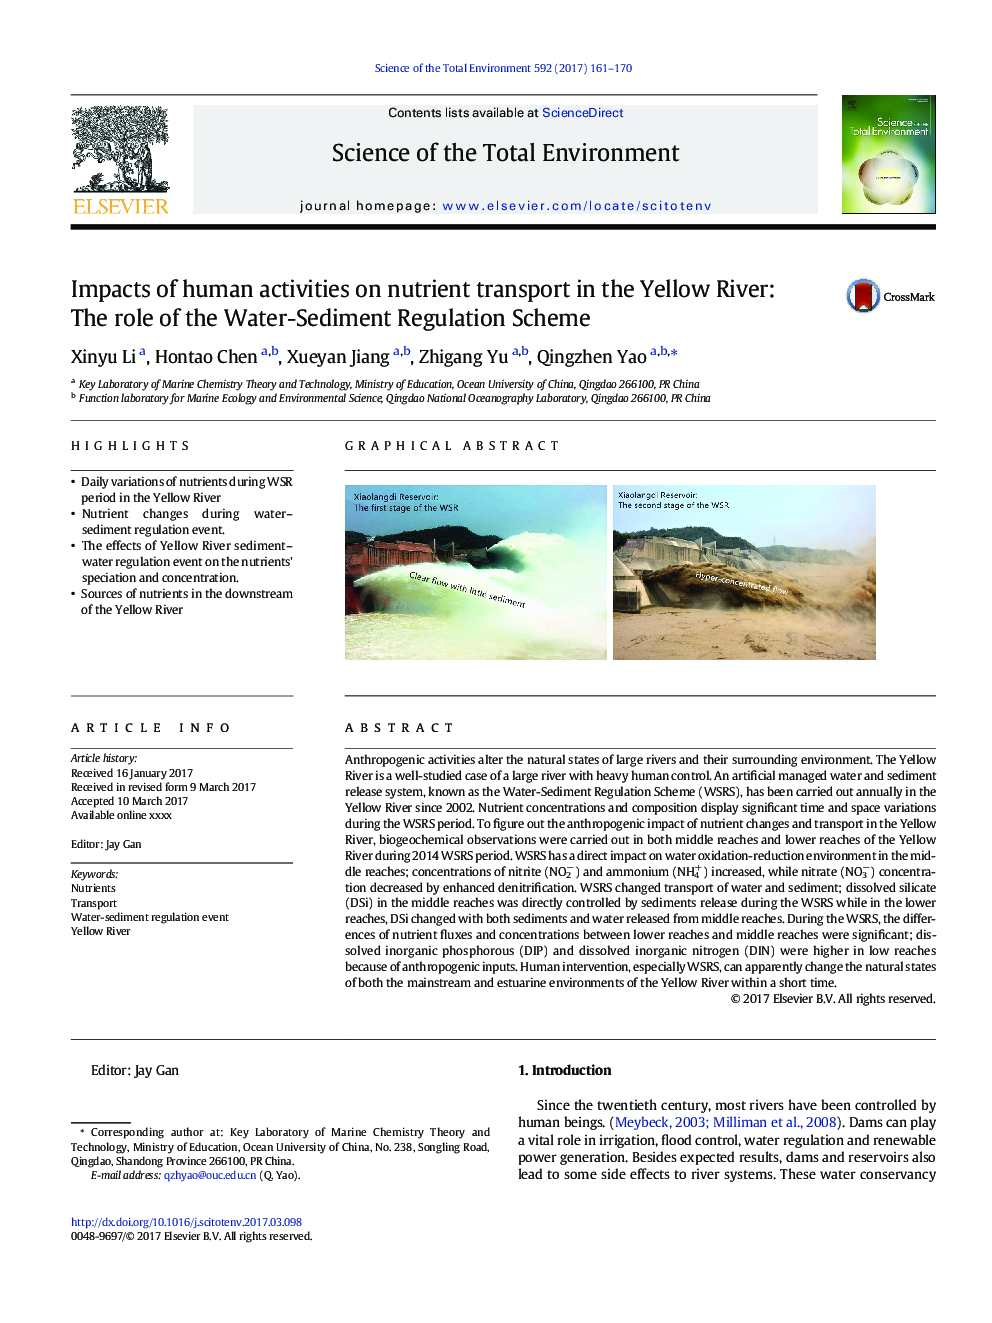 تأثیر فعالیت های انسانی بر انتقال مواد مغذی در رودخانه زرد: نقش برنامه ریزی آب رسوب 